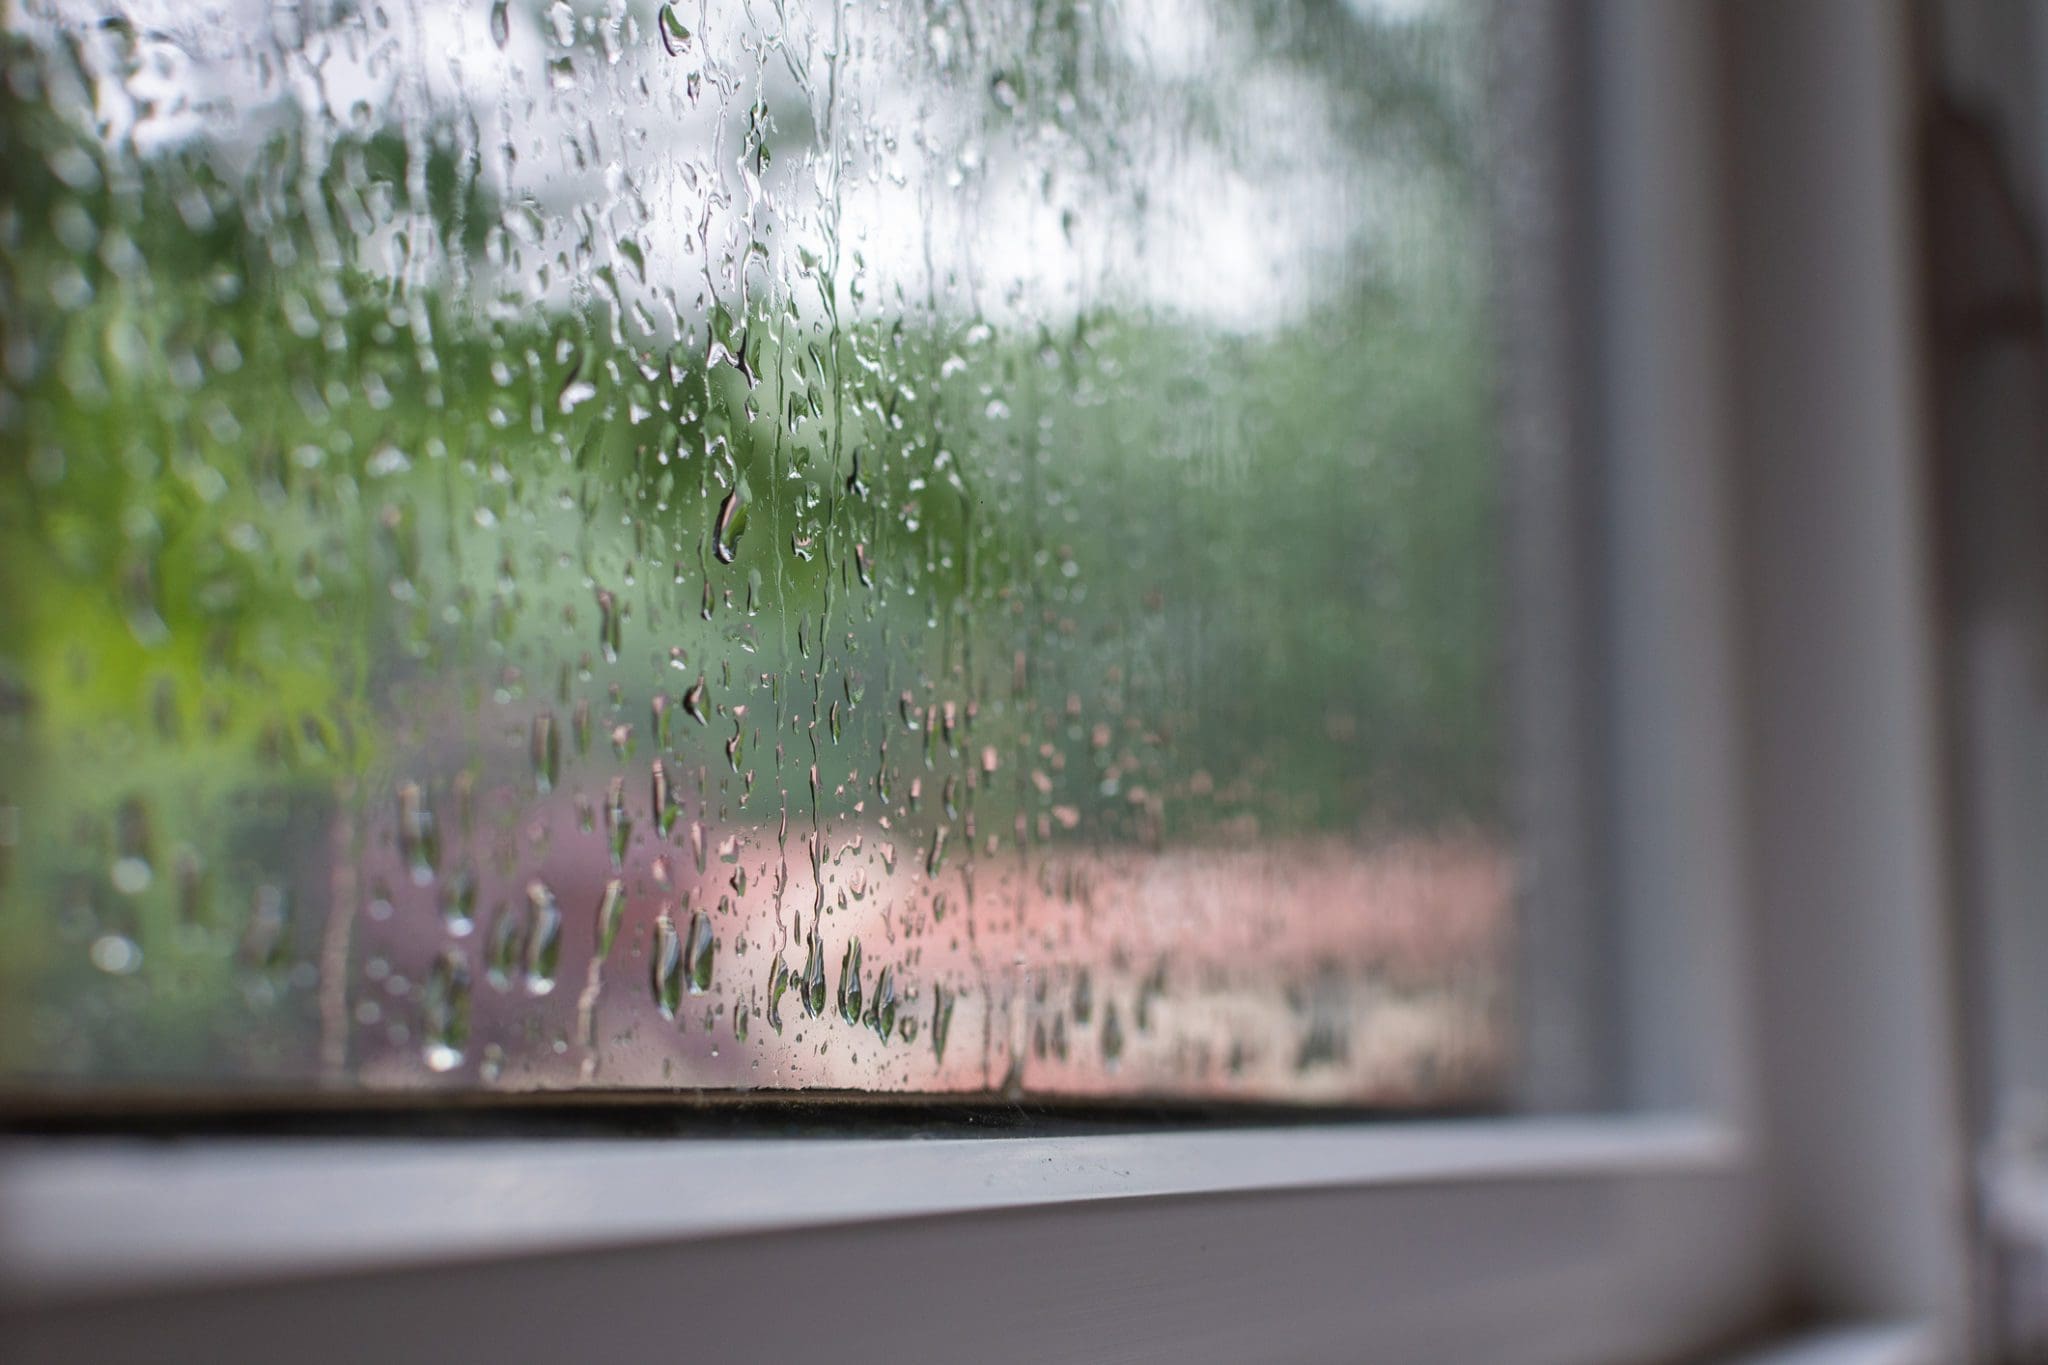 Rain on a window on a rainy day